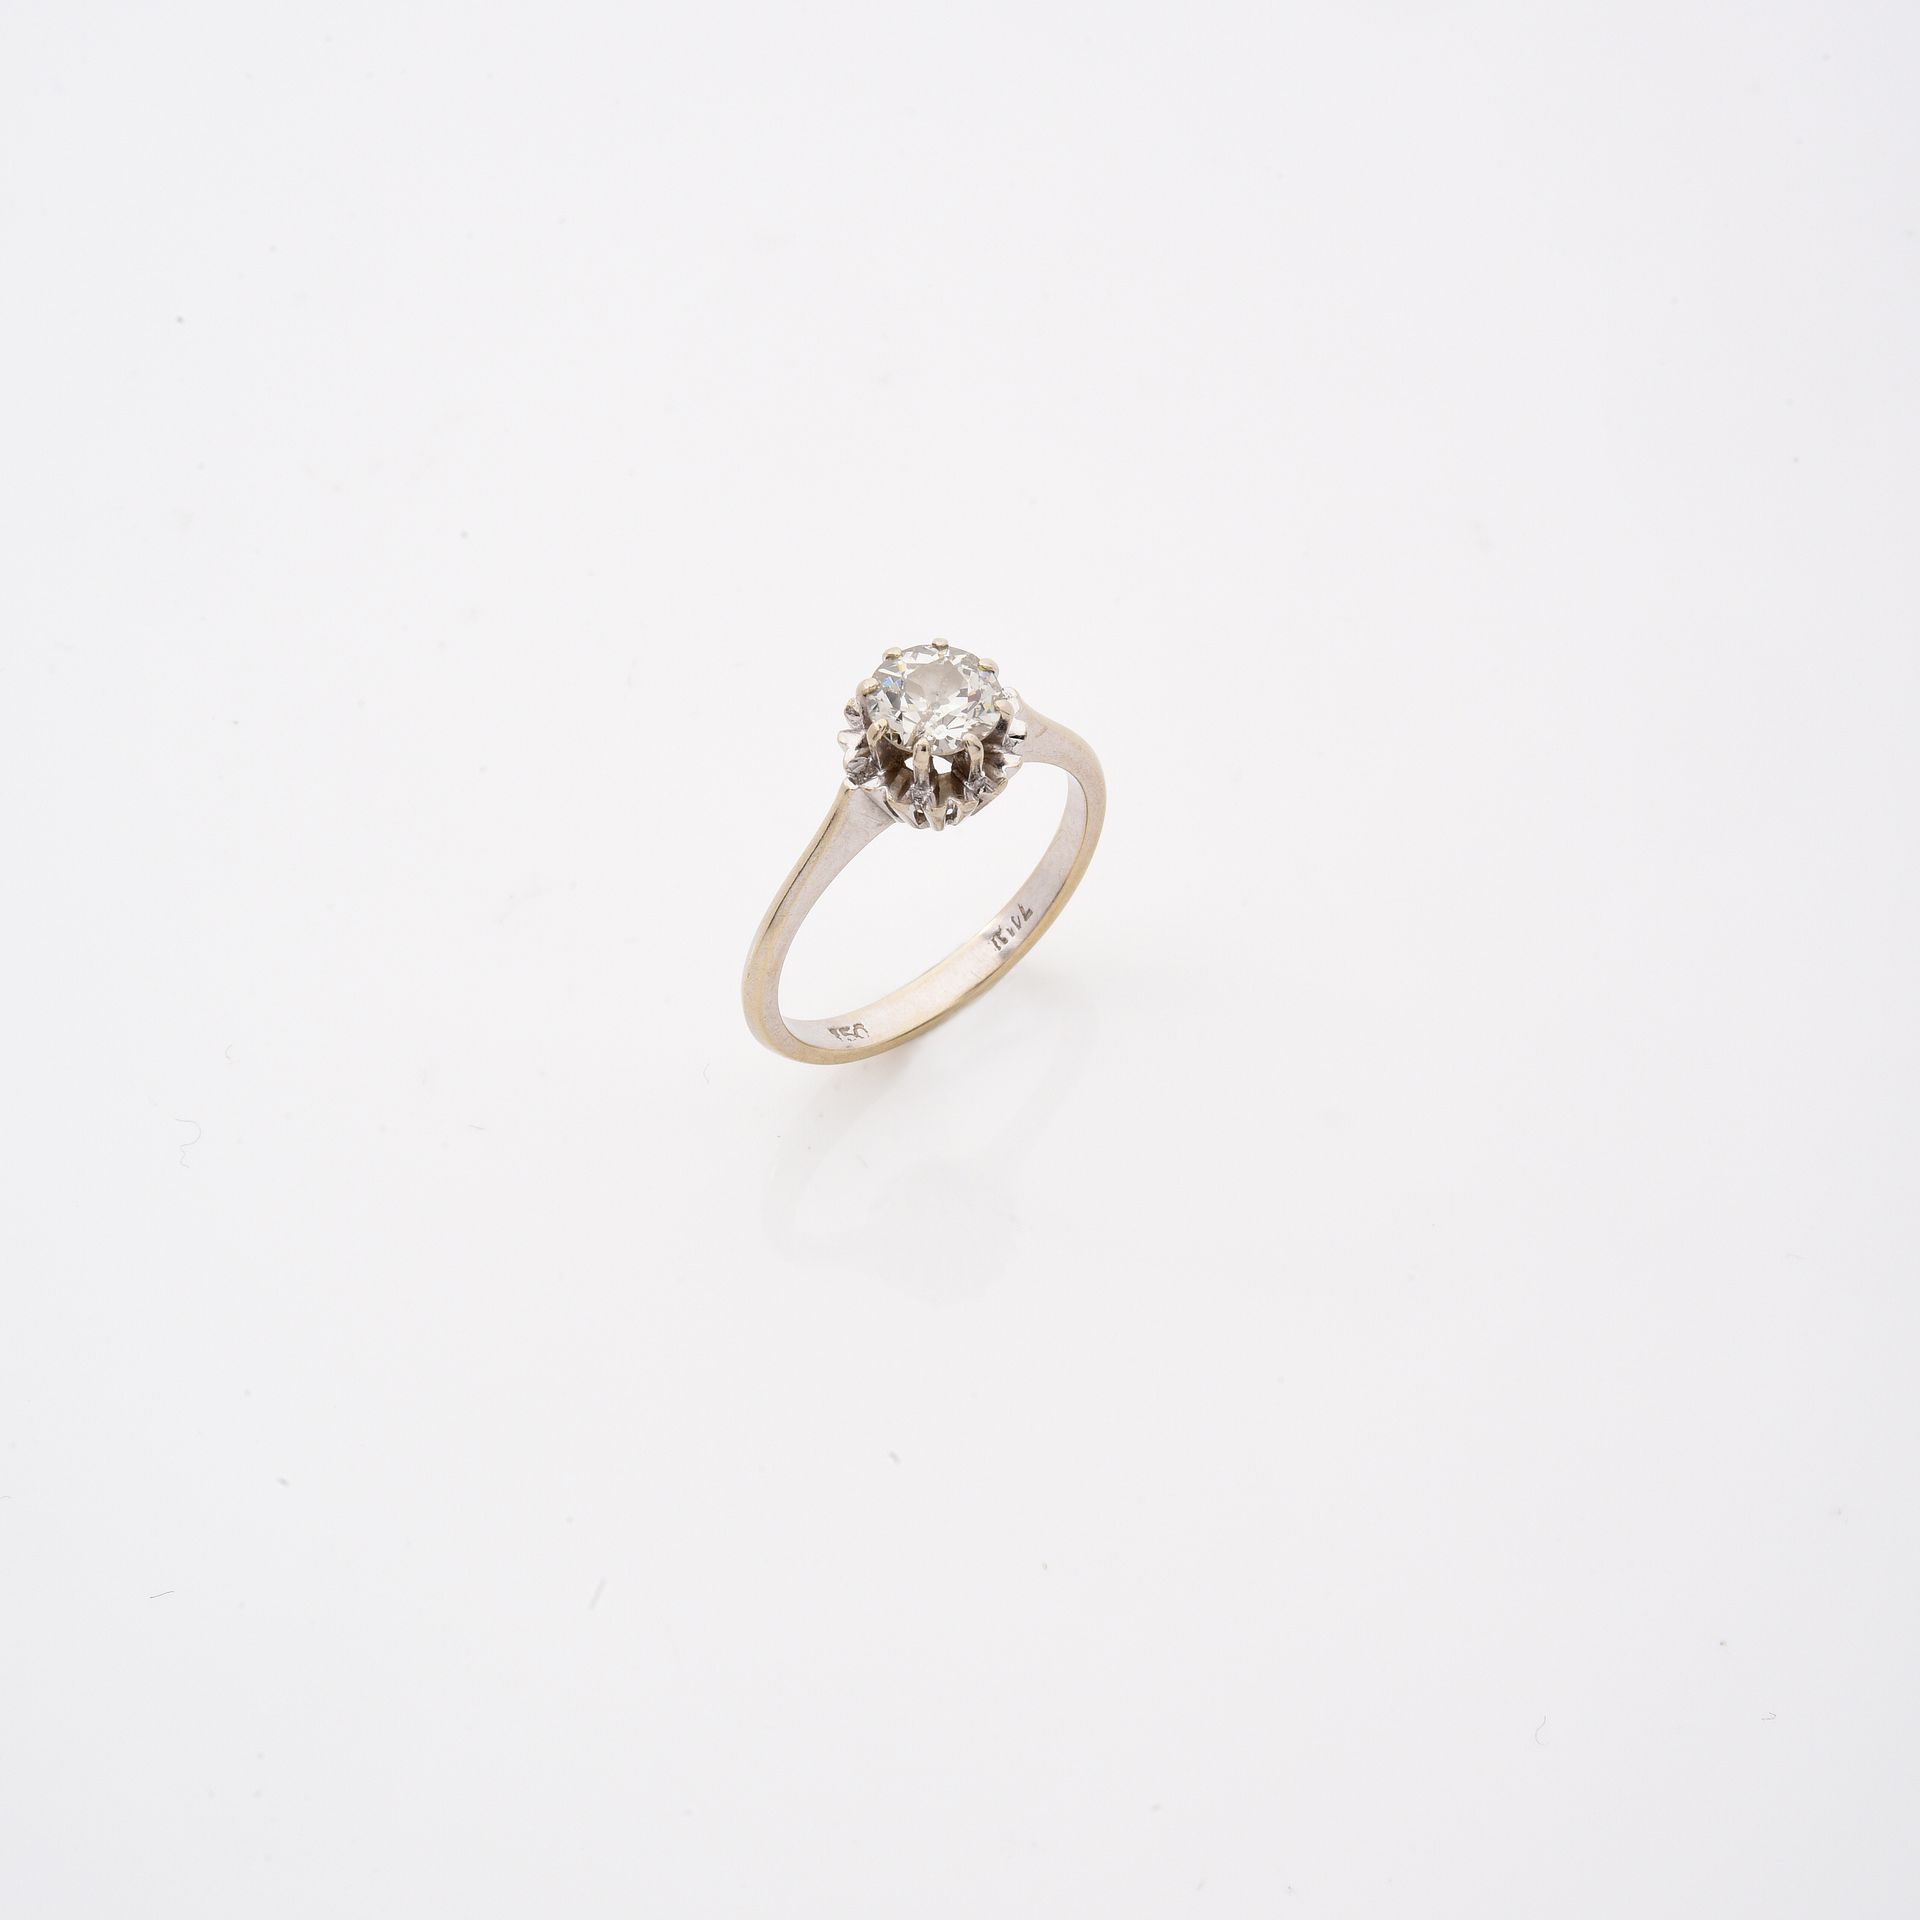 Null 戒指
白金，镶嵌着一颗半截式钻石，重约0.80克拉。 
一枚18K金戒指，镶嵌着一颗圆型钻石，重约0.80克拉。 

RC :
石头大小：5.9 - &hellip;